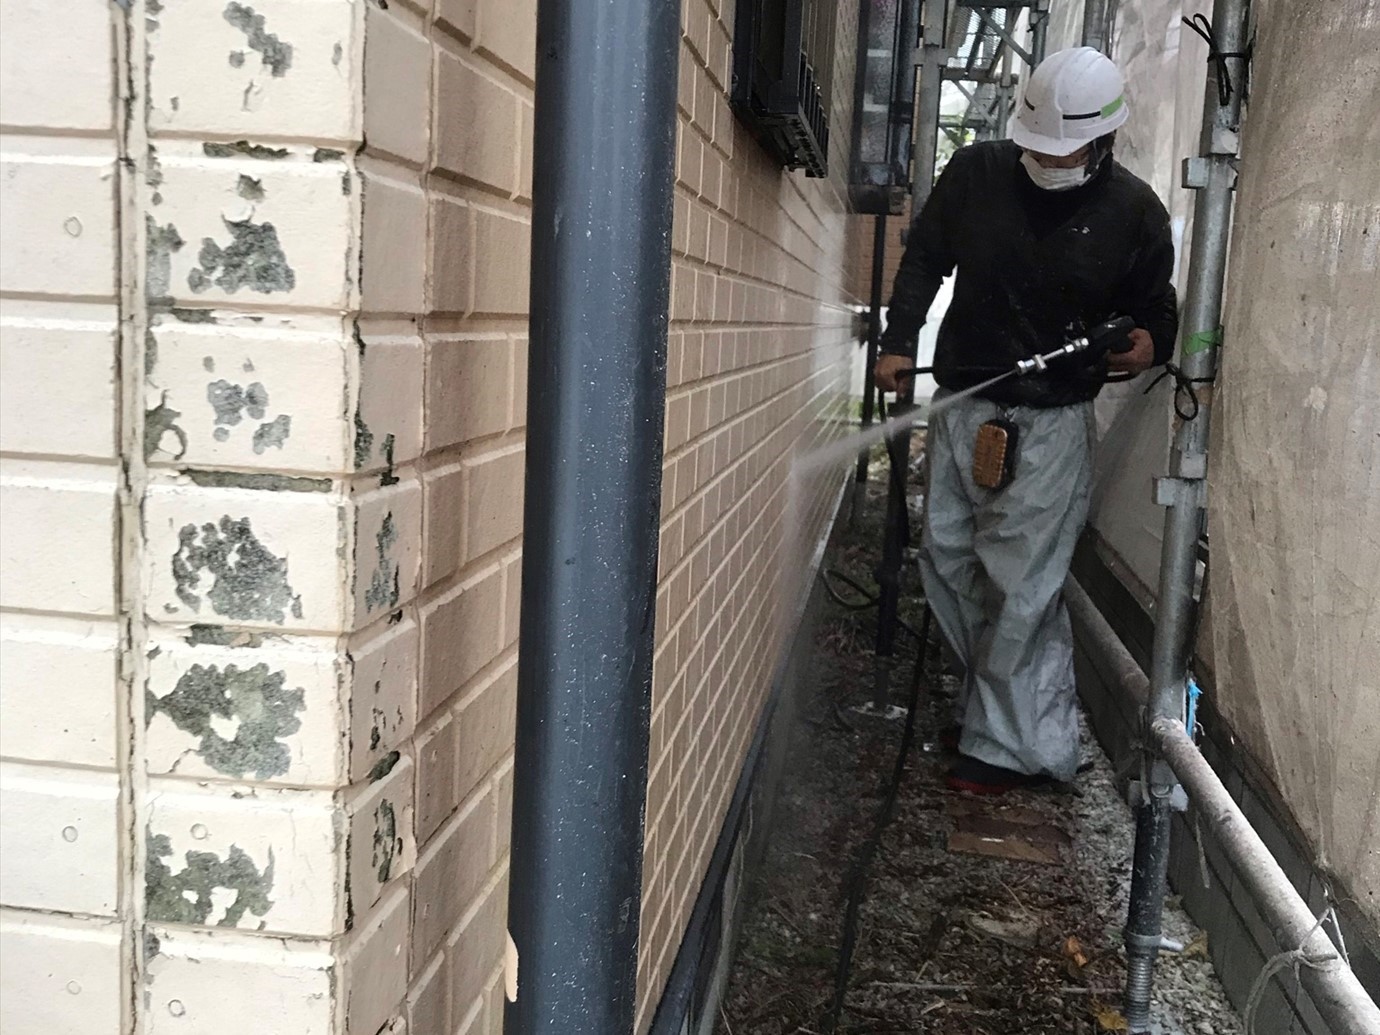 伊奈町賃貸一軒家塗り替え塗装前の高圧洗浄1階外壁部分作業